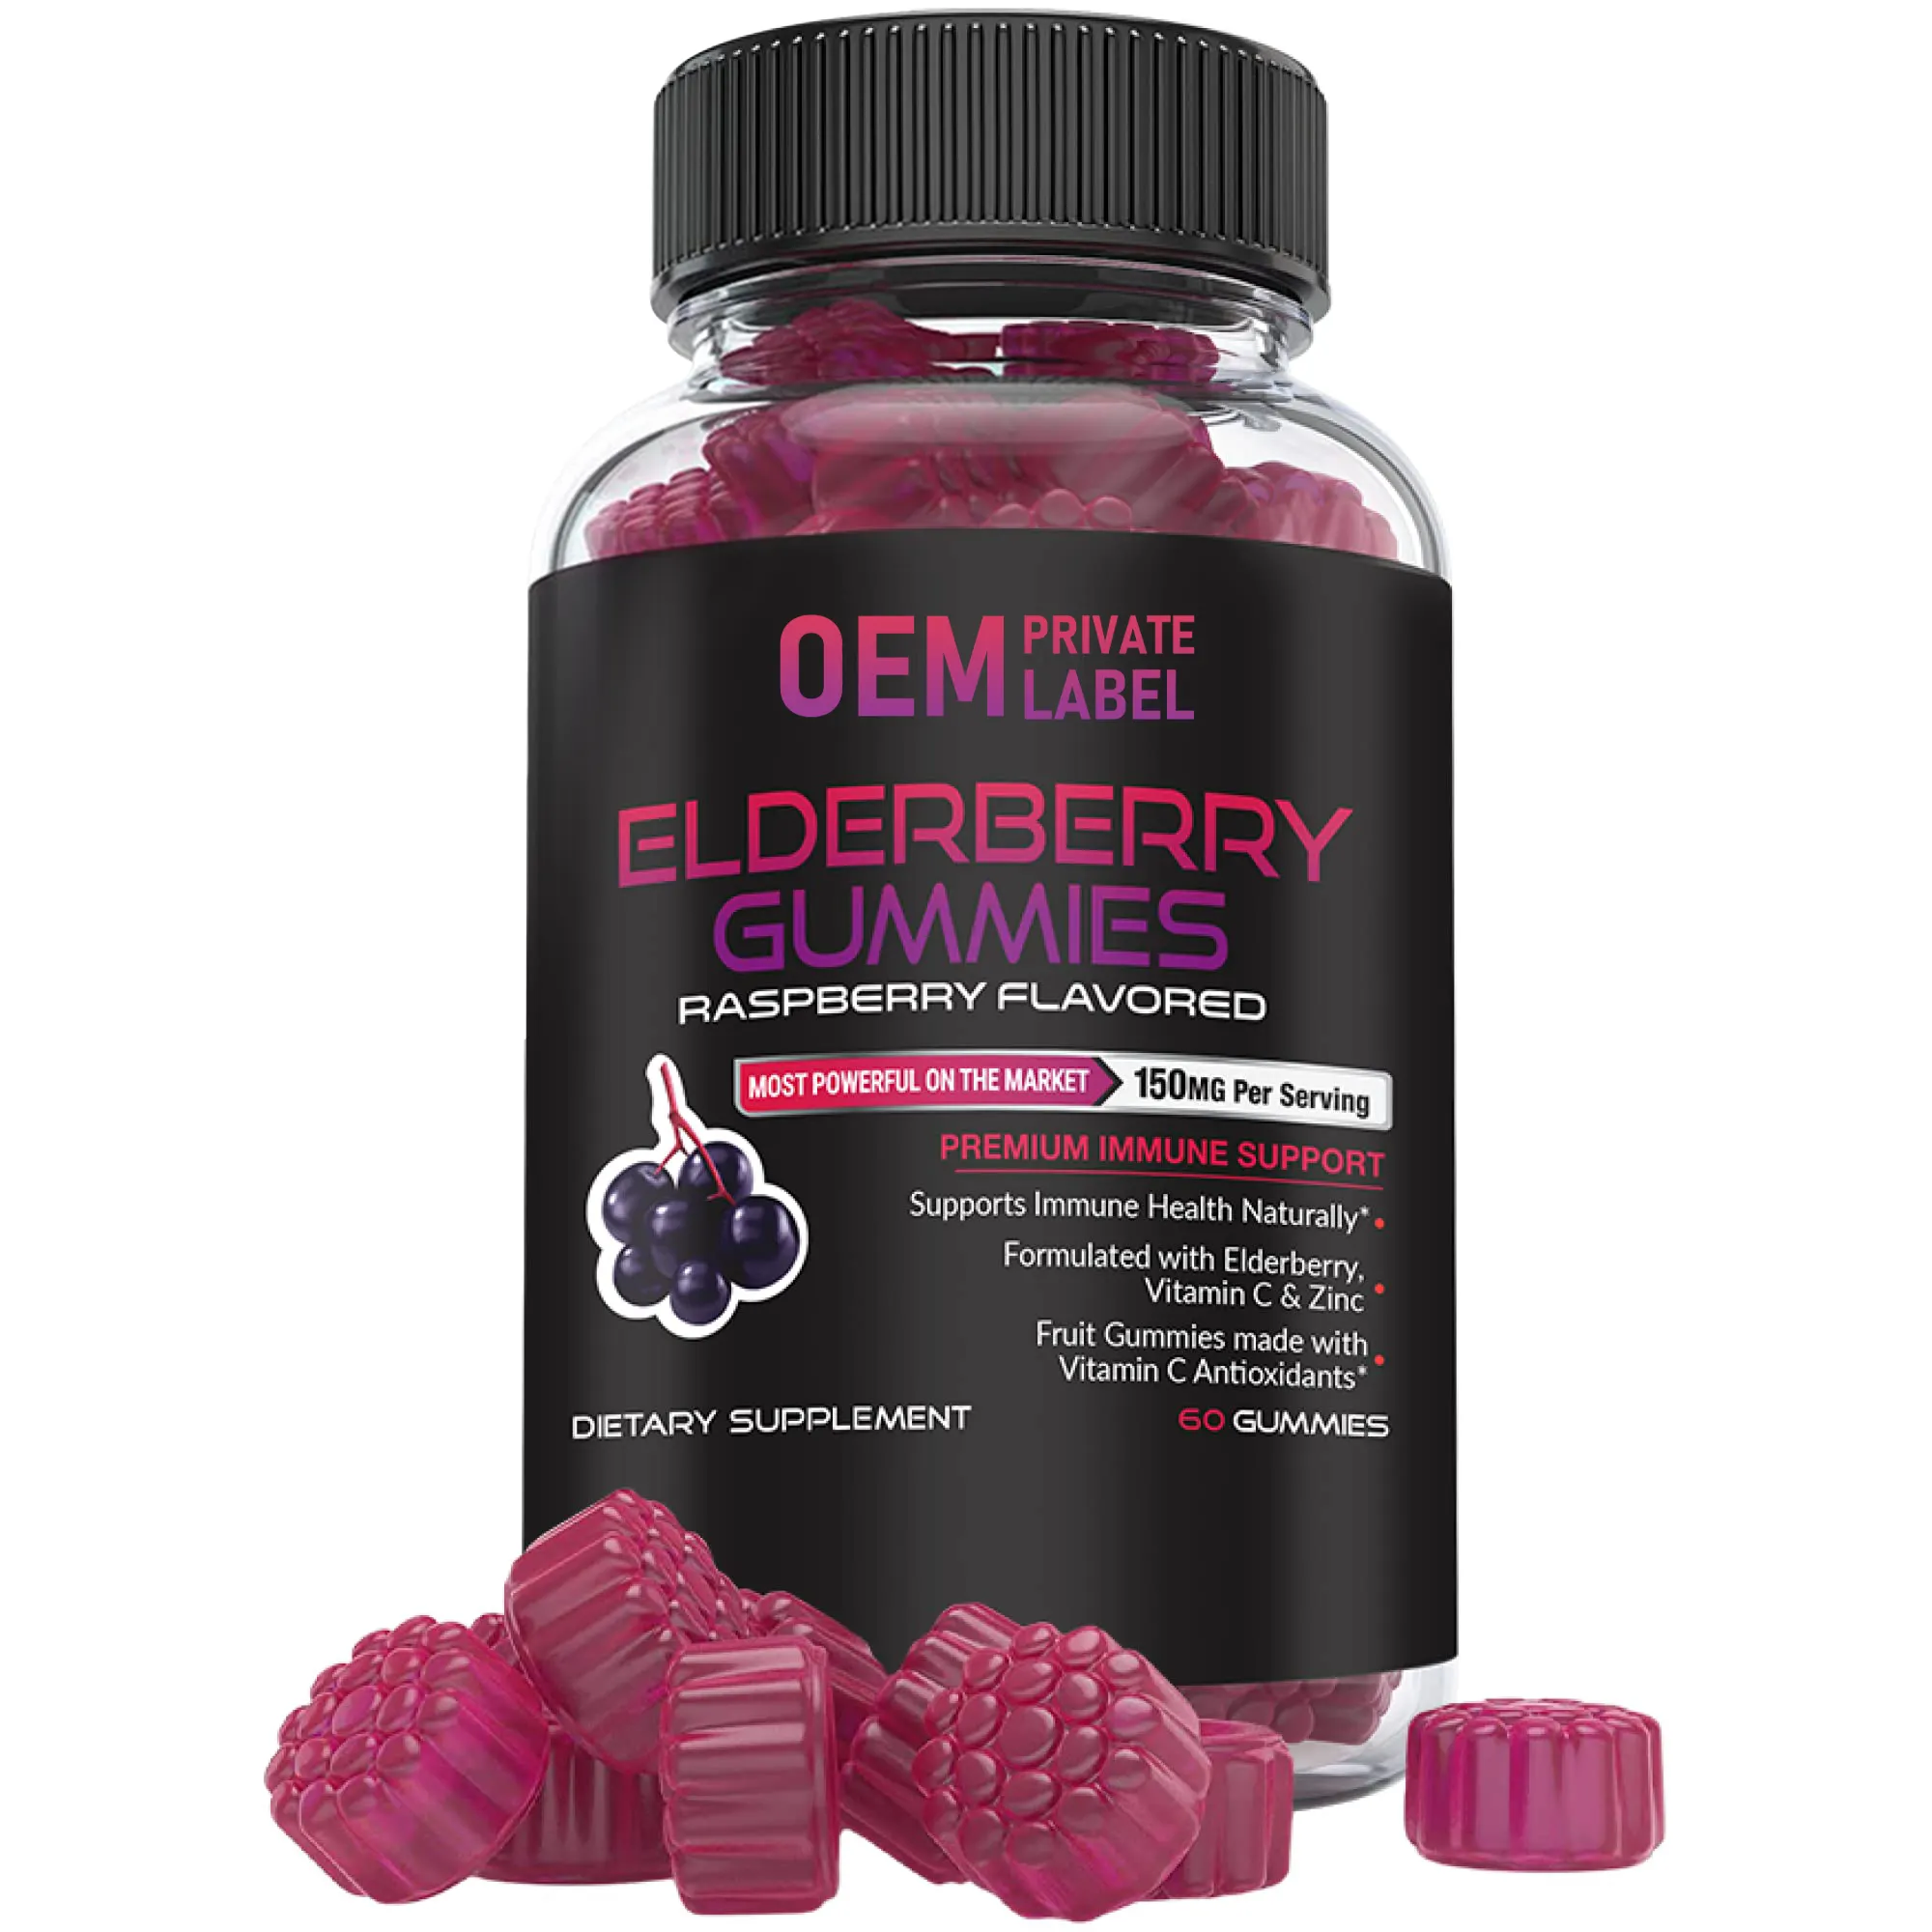 Ökologischer Elderberry Gummi enthält Zink und Vitamin C aufhellende Antioxidantien zur Unterstützung einer gesunden Immunität